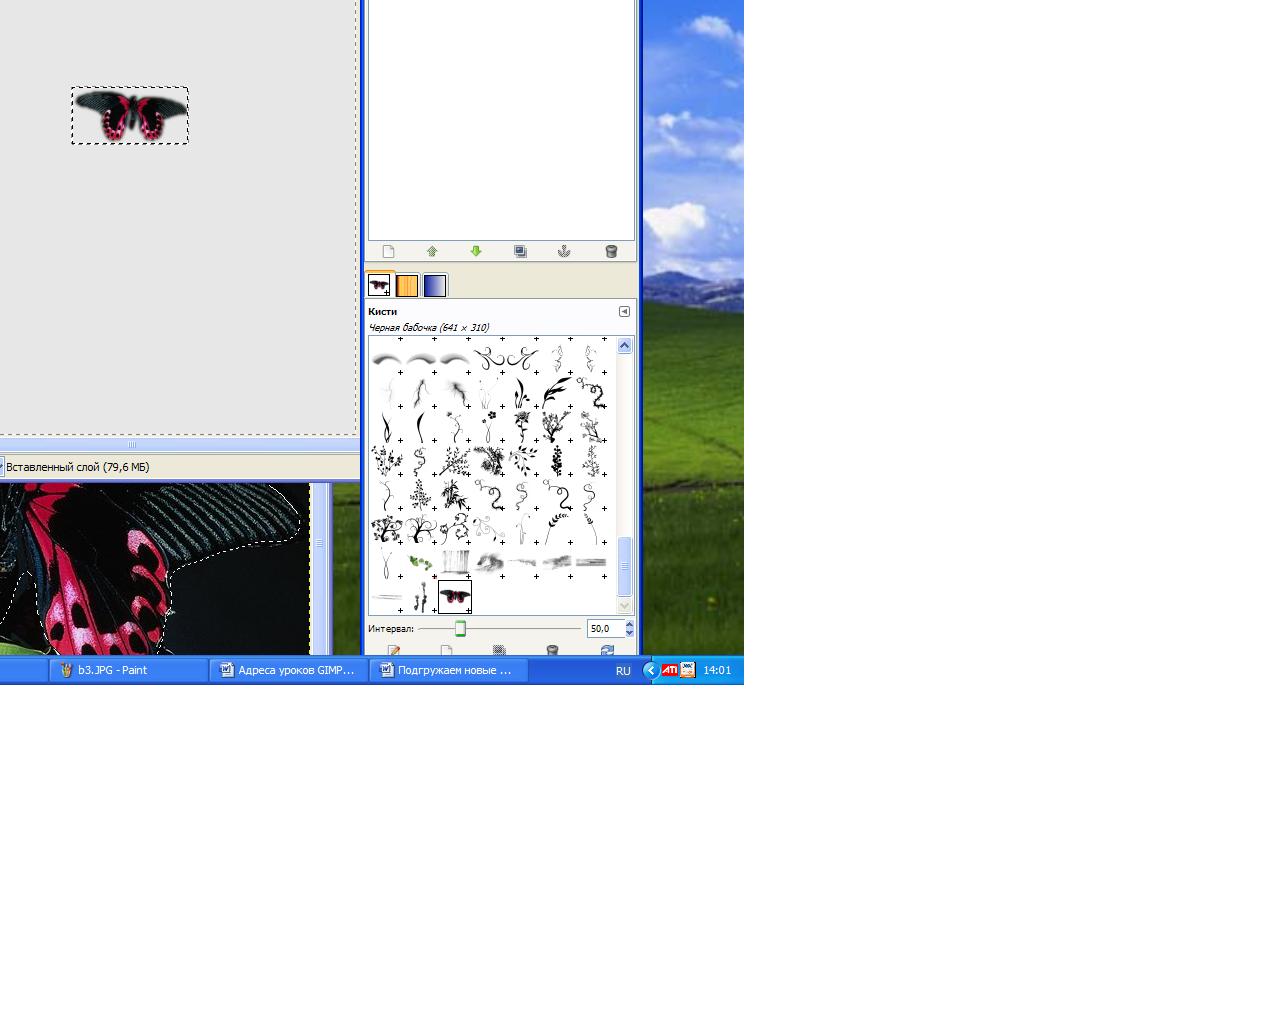 Методическая разработка по графическому редактору GIMP в текстовом формате DOC и описание работы в виде презентации